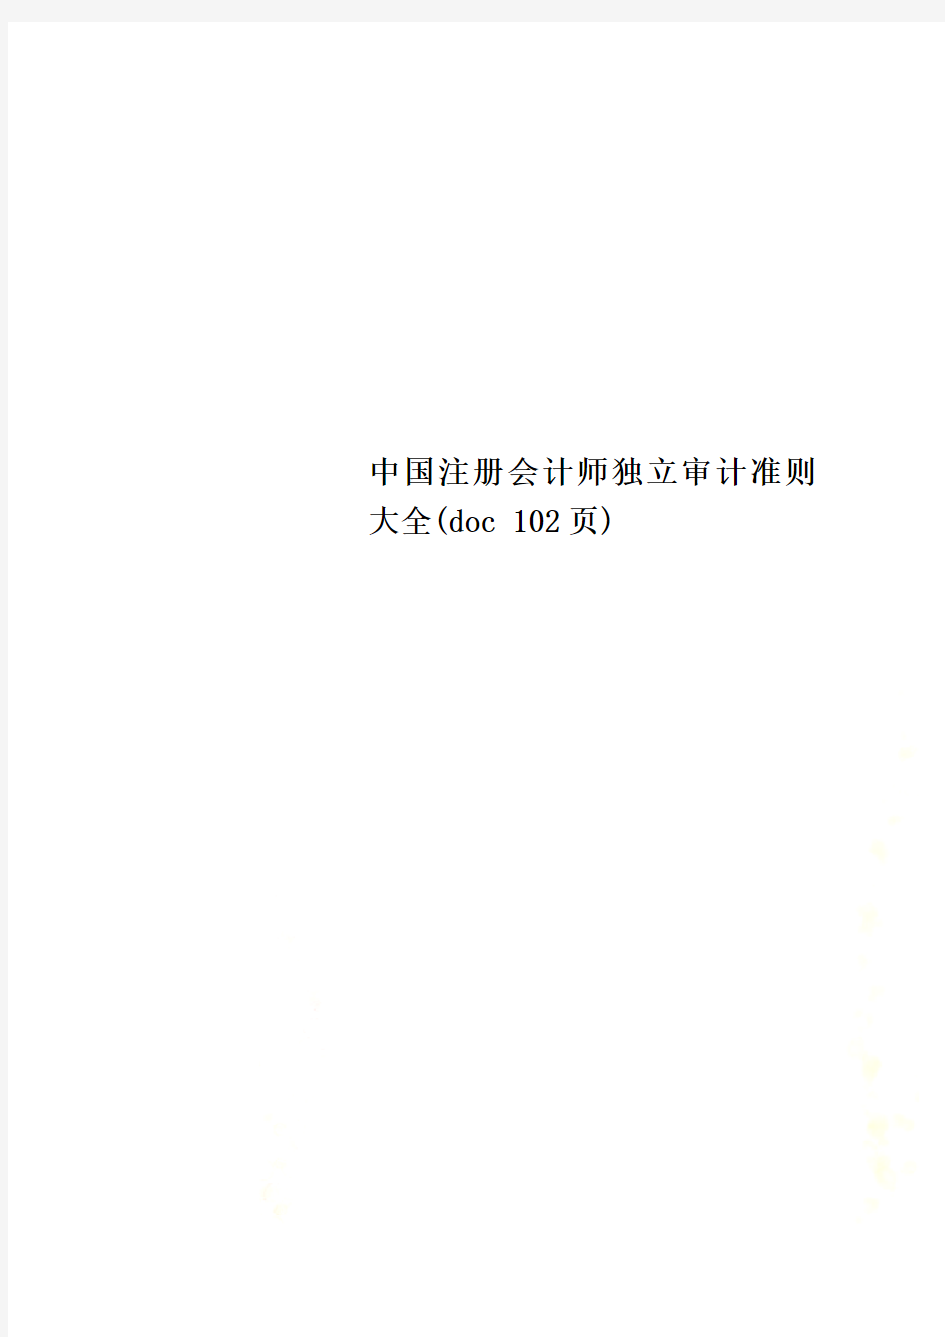 中国注册会计师独立审计准则大全(doc 102页)